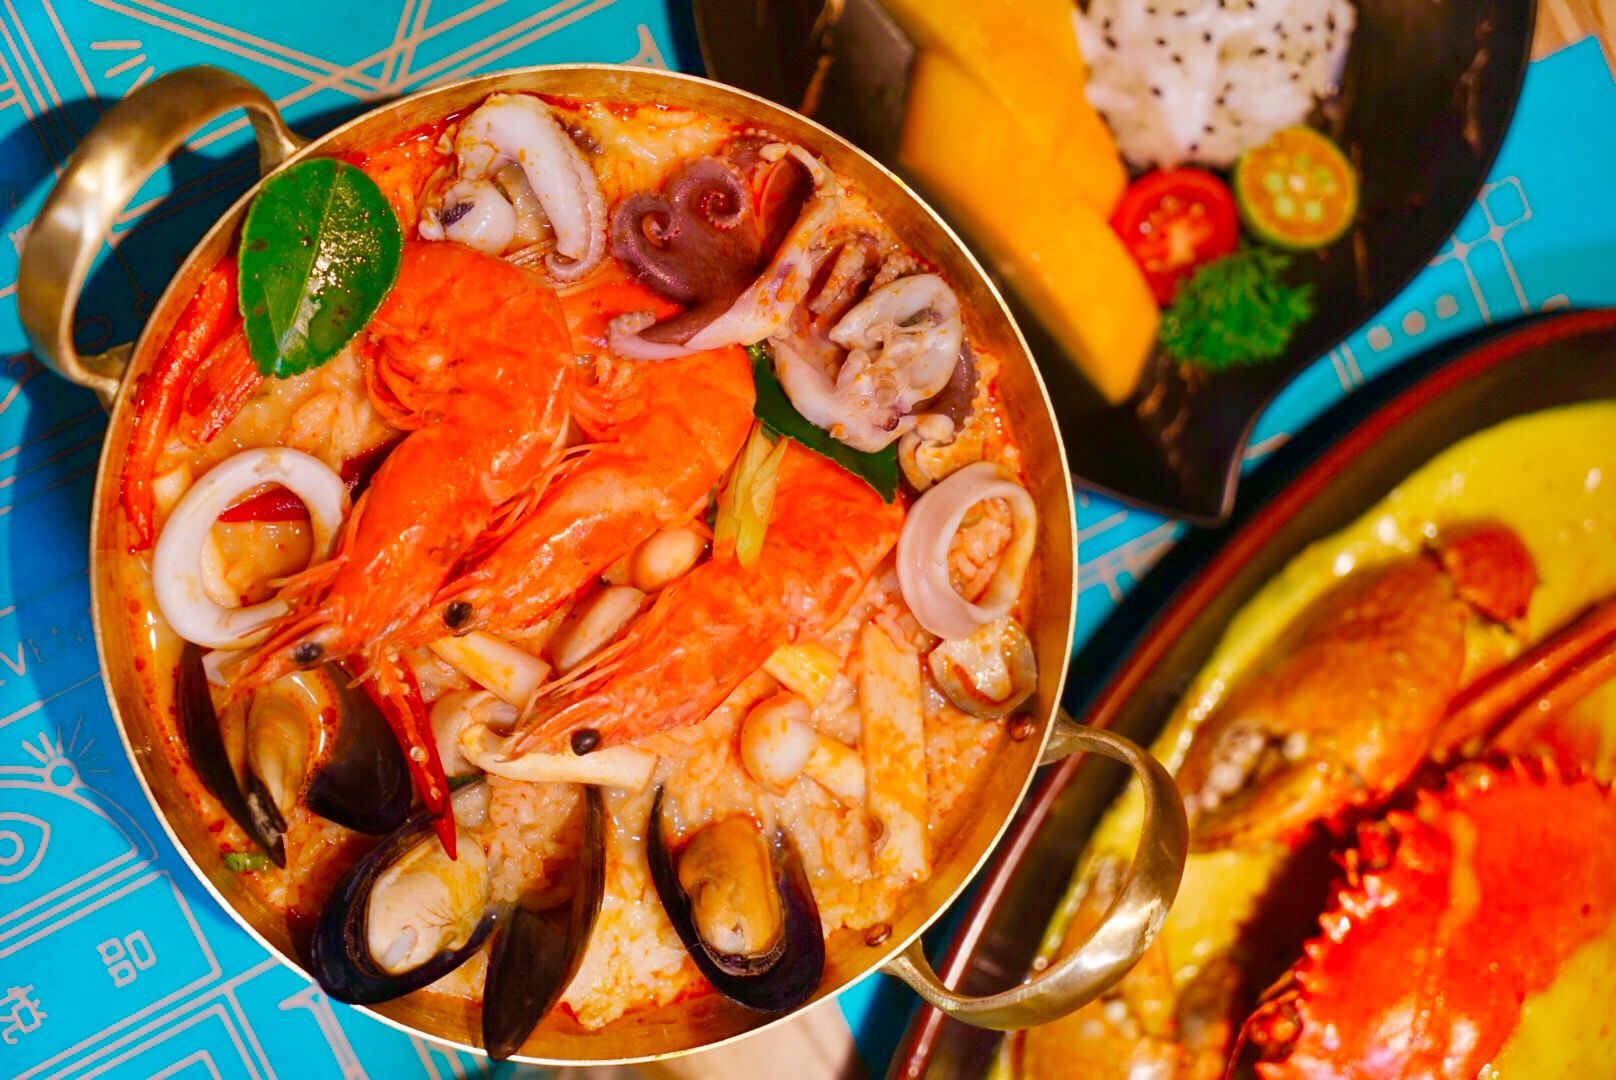 两碗泰国汤姆汤 库存图片. 图片 包括有 泰国, 烹调, 绿色, 橙色, 弯脚的, 红色, 青葱, 辣椒 - 152867025